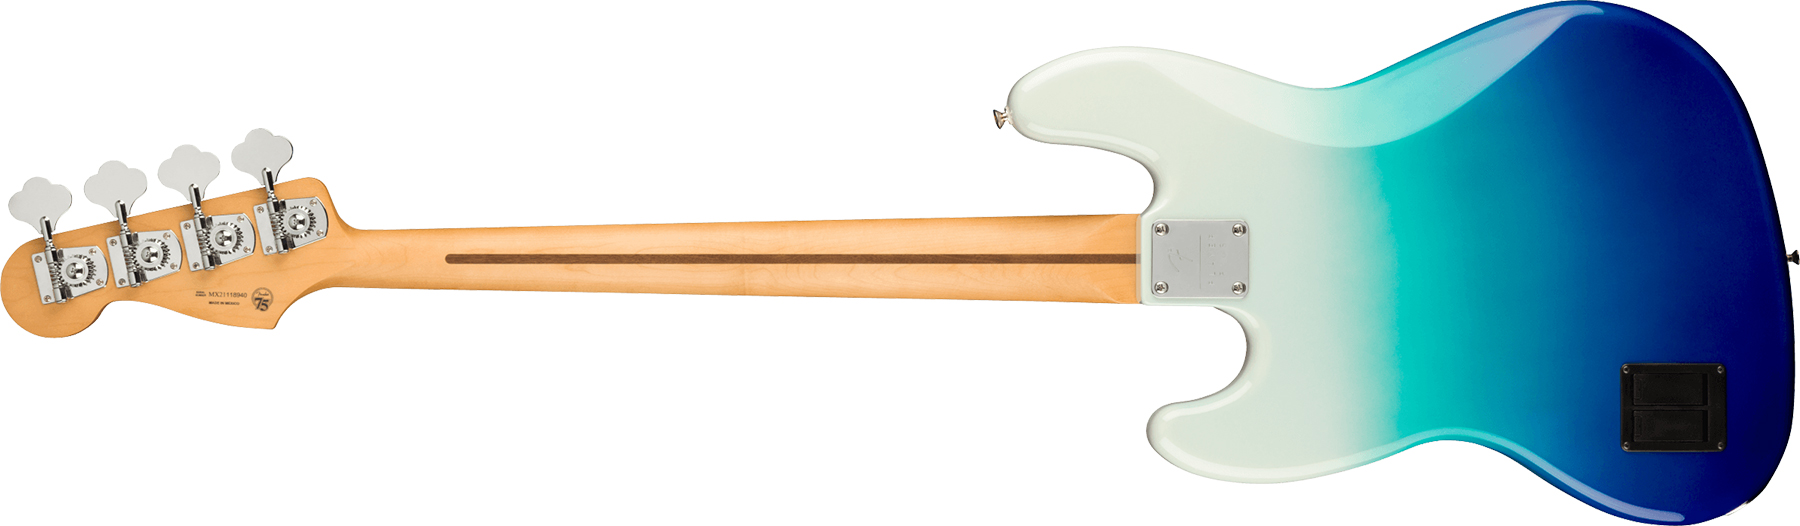 Fender Jazz Bass Player Plus Mex Active Pf - Belair Blue - Bajo eléctrico de cuerpo sólido - Variation 1